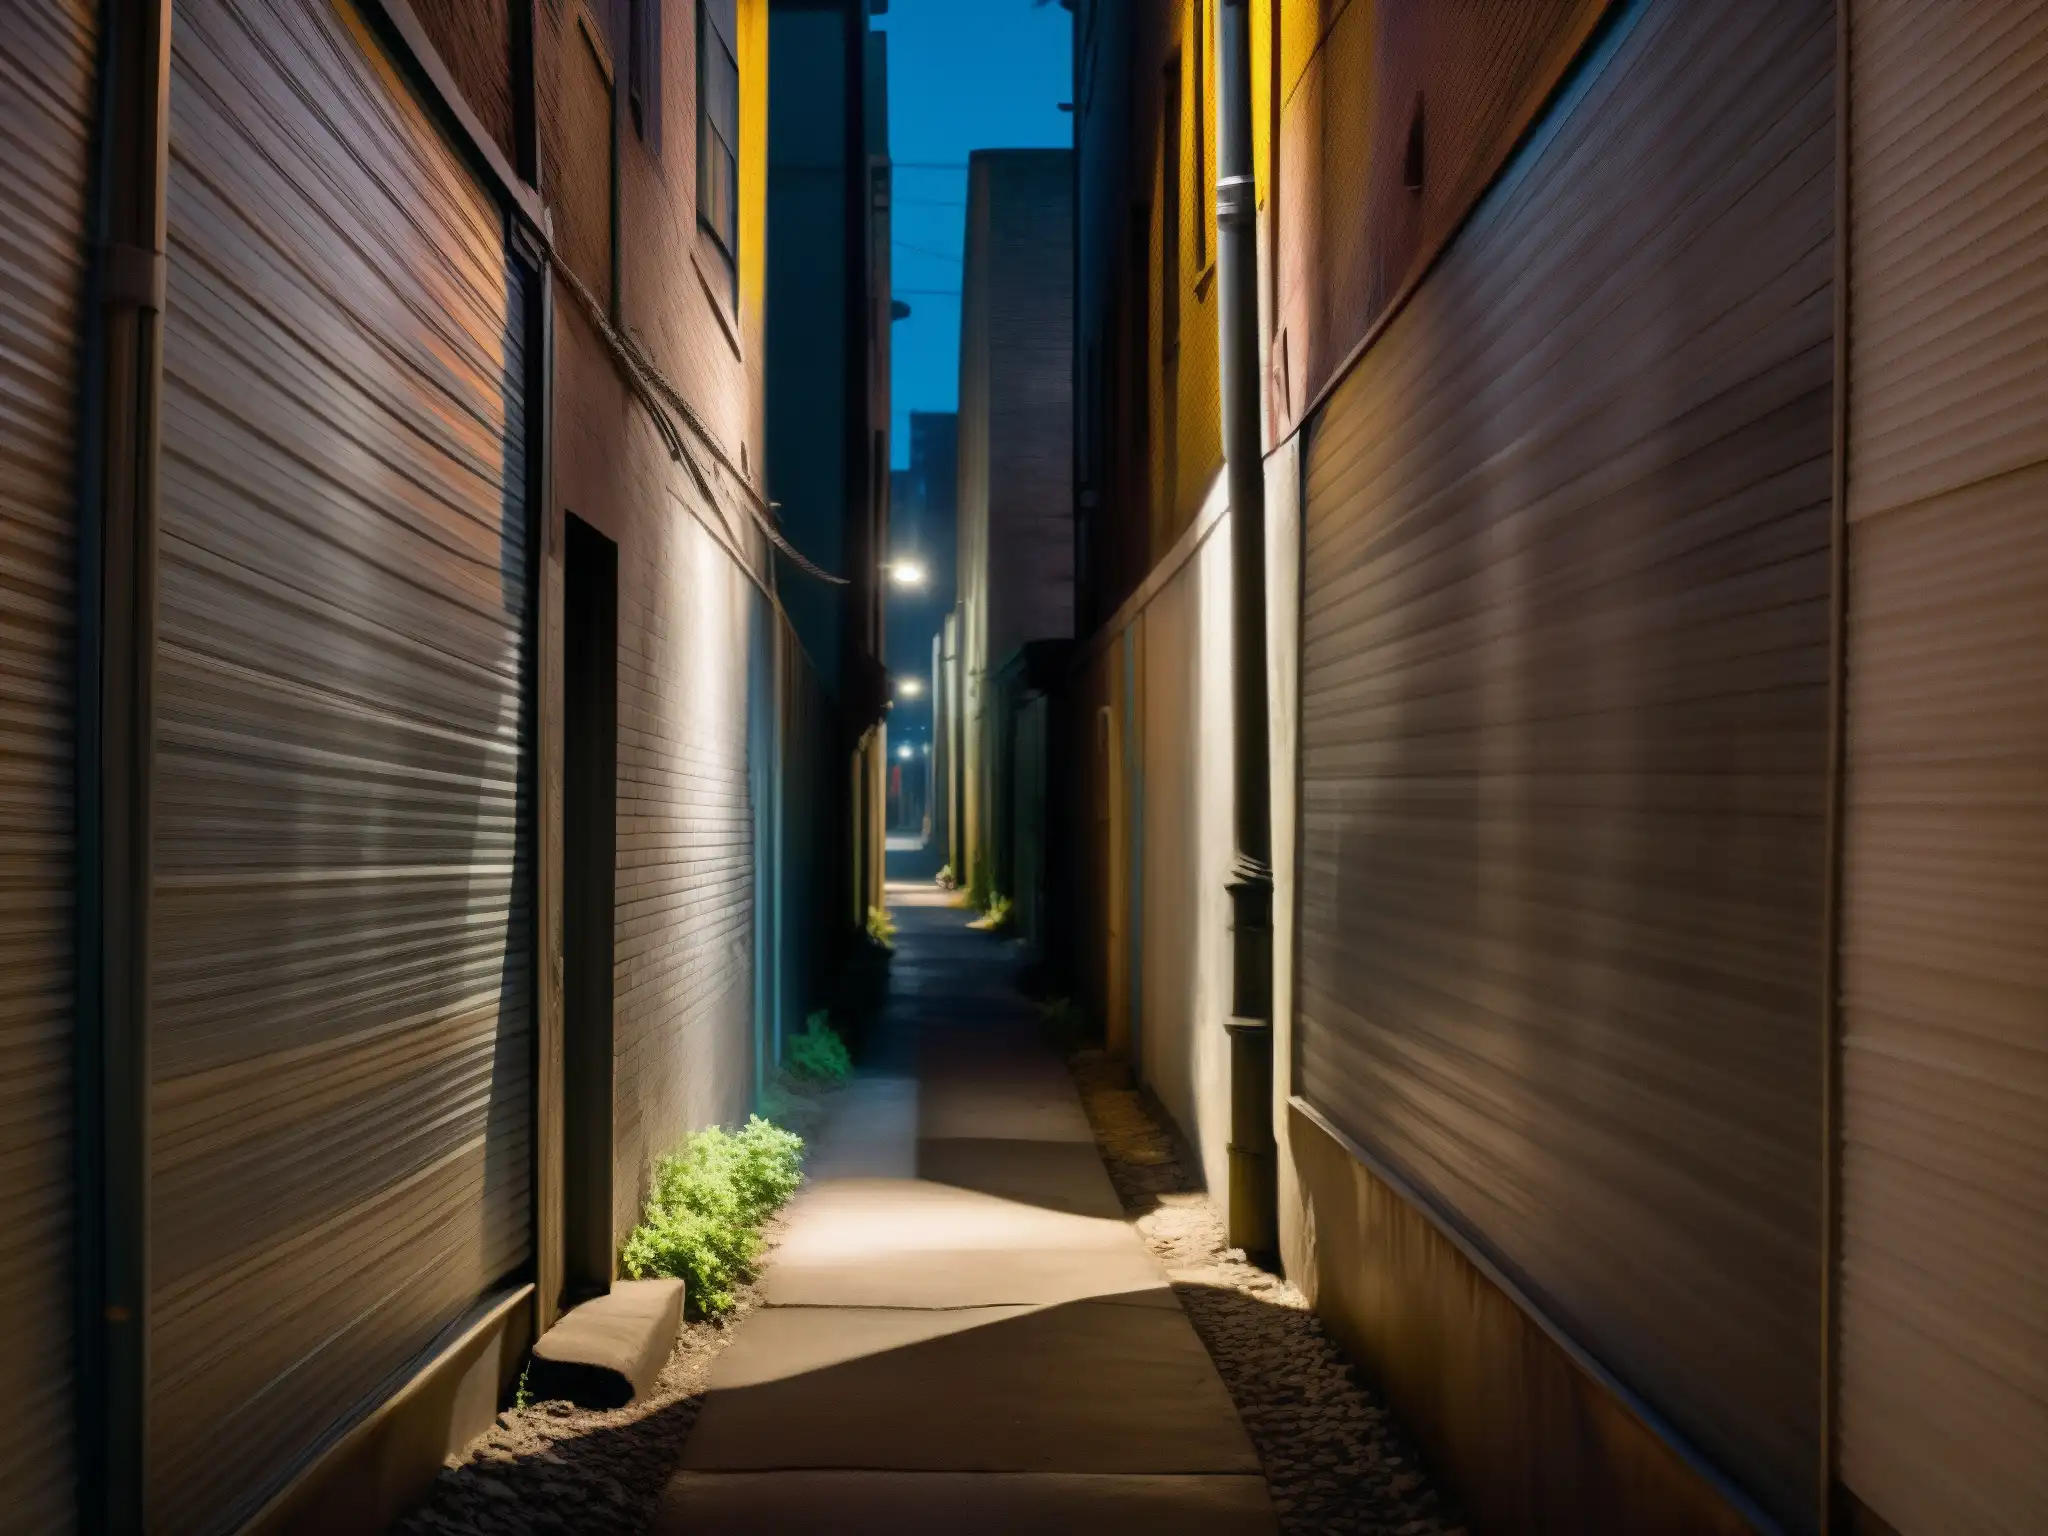 Enigmático callejón urbano de noche, con luz tenue y sombras inquietantes